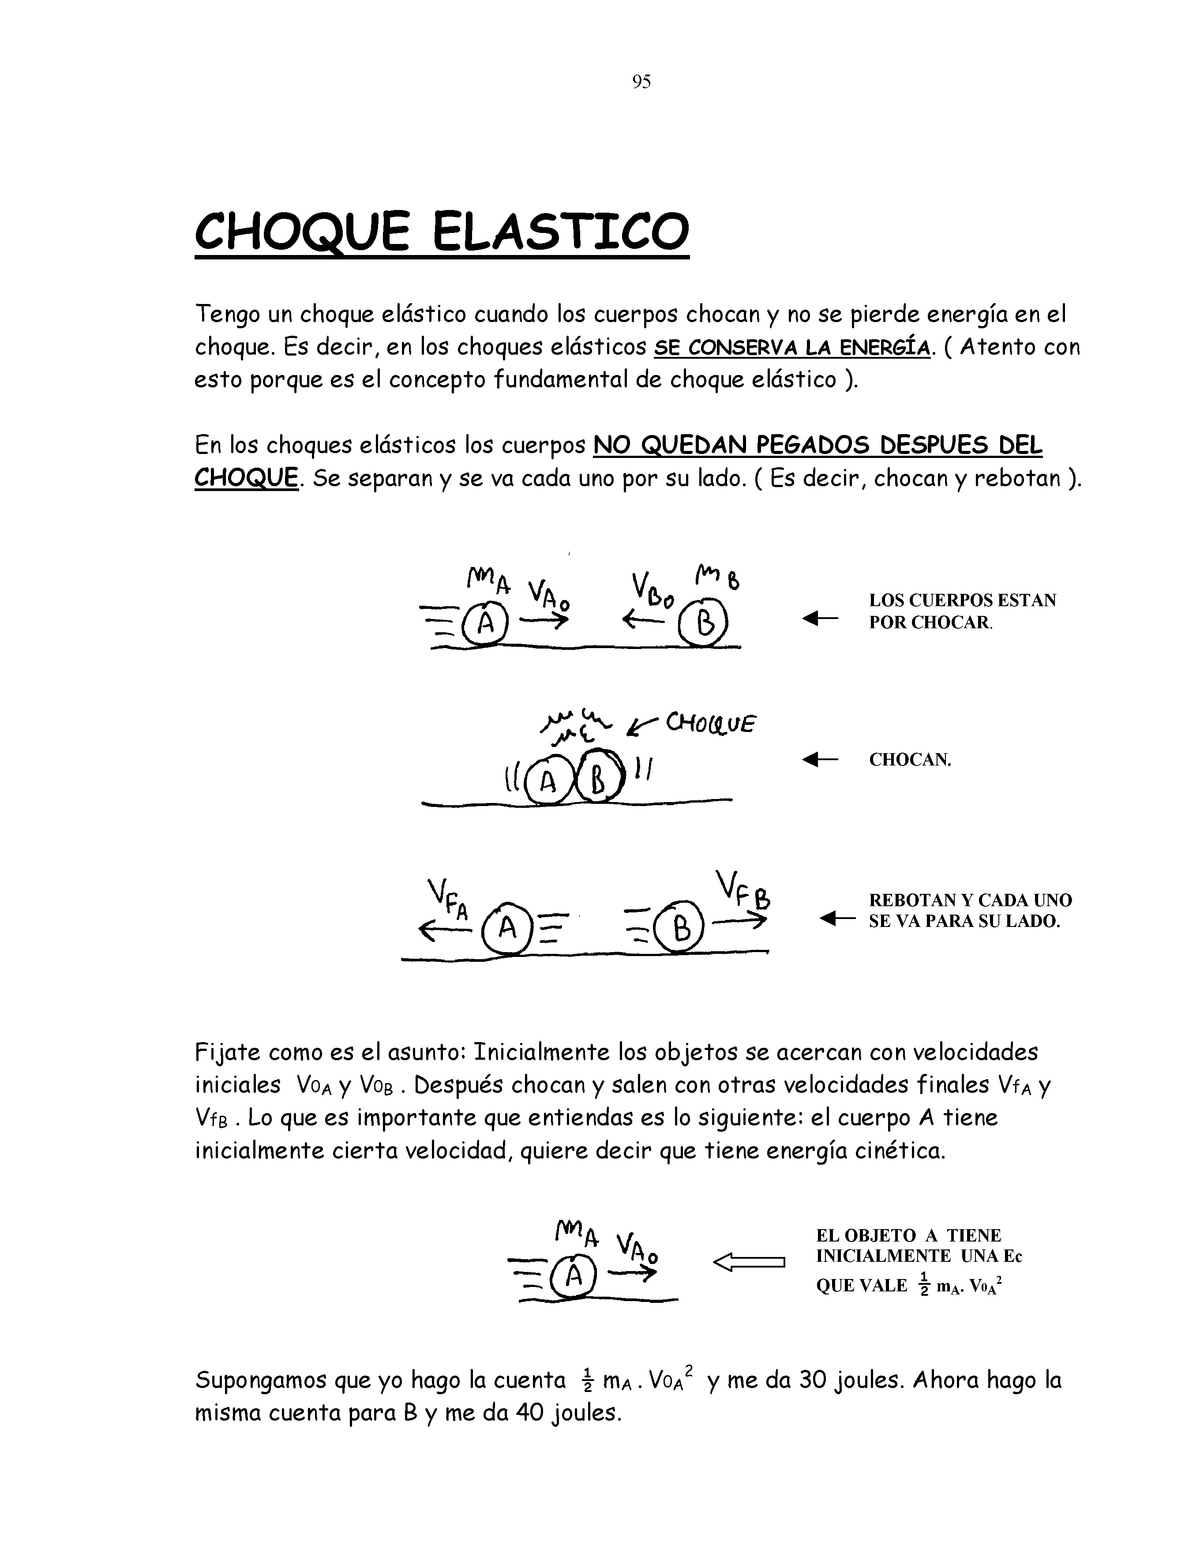 Ml3 Choque Elastico Y En 2d 95 Choque Elastico Tengo Un Choque Cuando Los Cuerpos Chocan Y No 0632